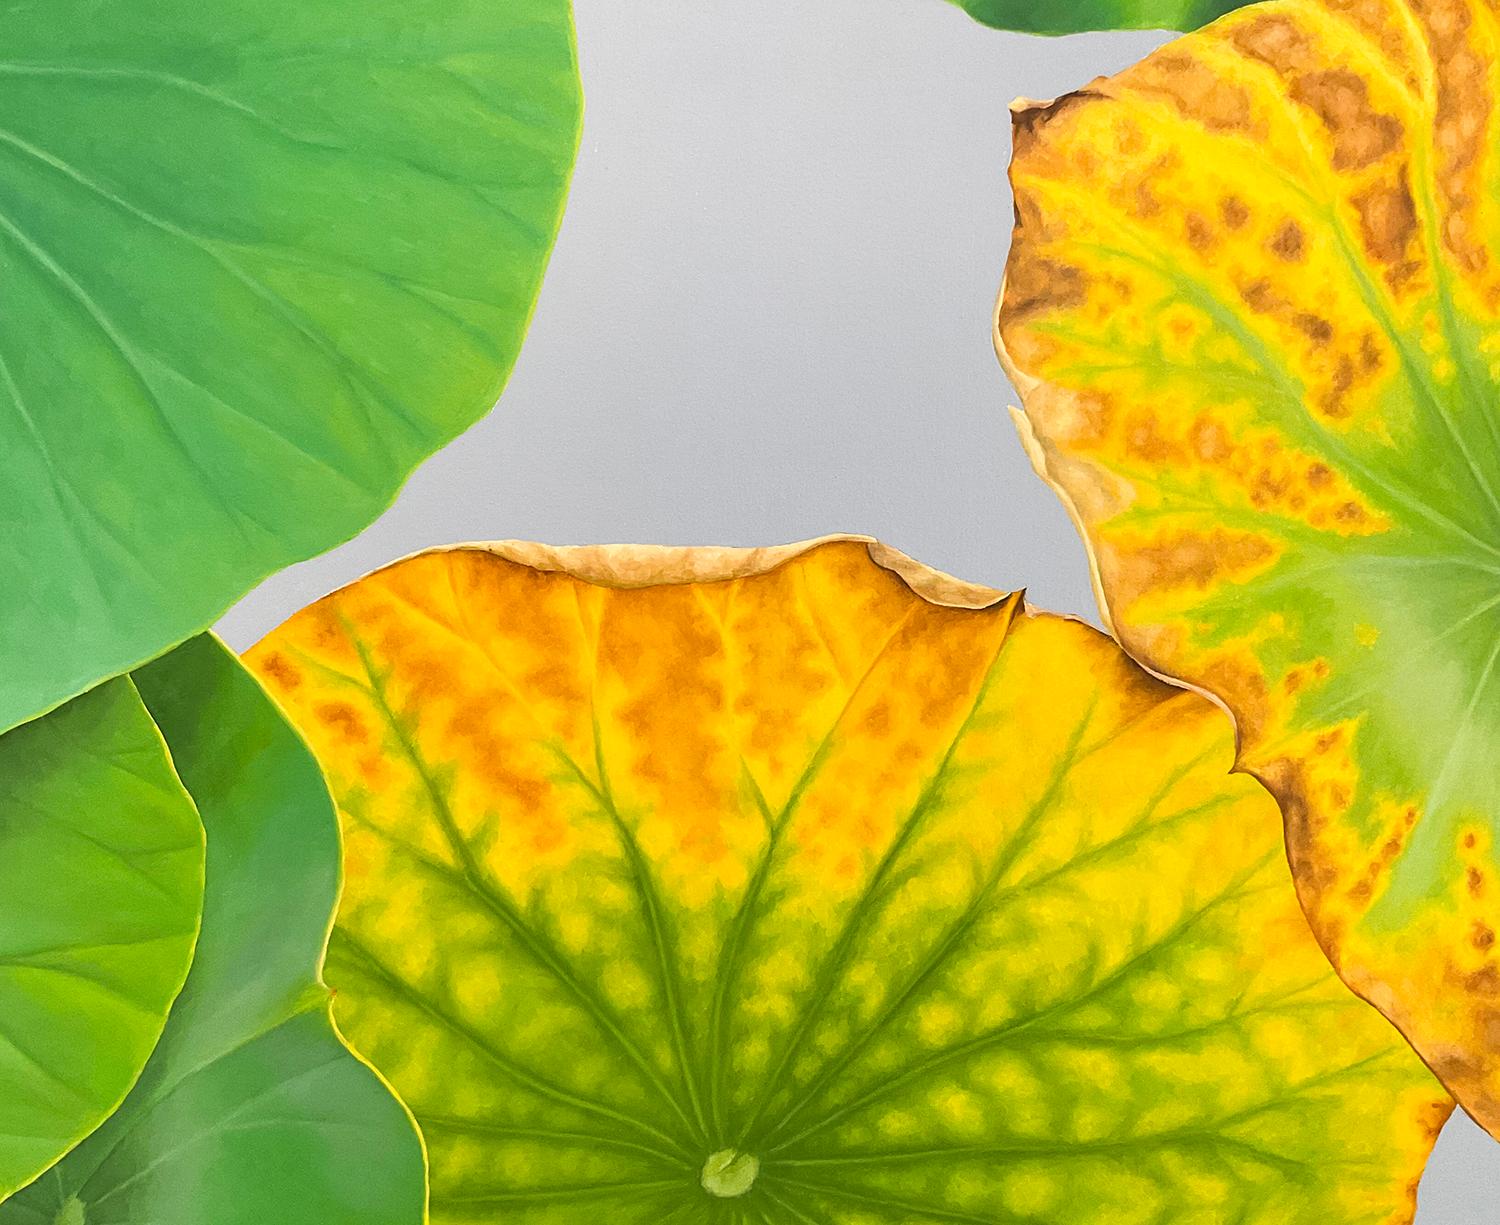 Lotus 30 : Nature morte réaliste photographique d'une feuille de lotus verte sur gris  - Photoréalisme Painting par Frank DePietro